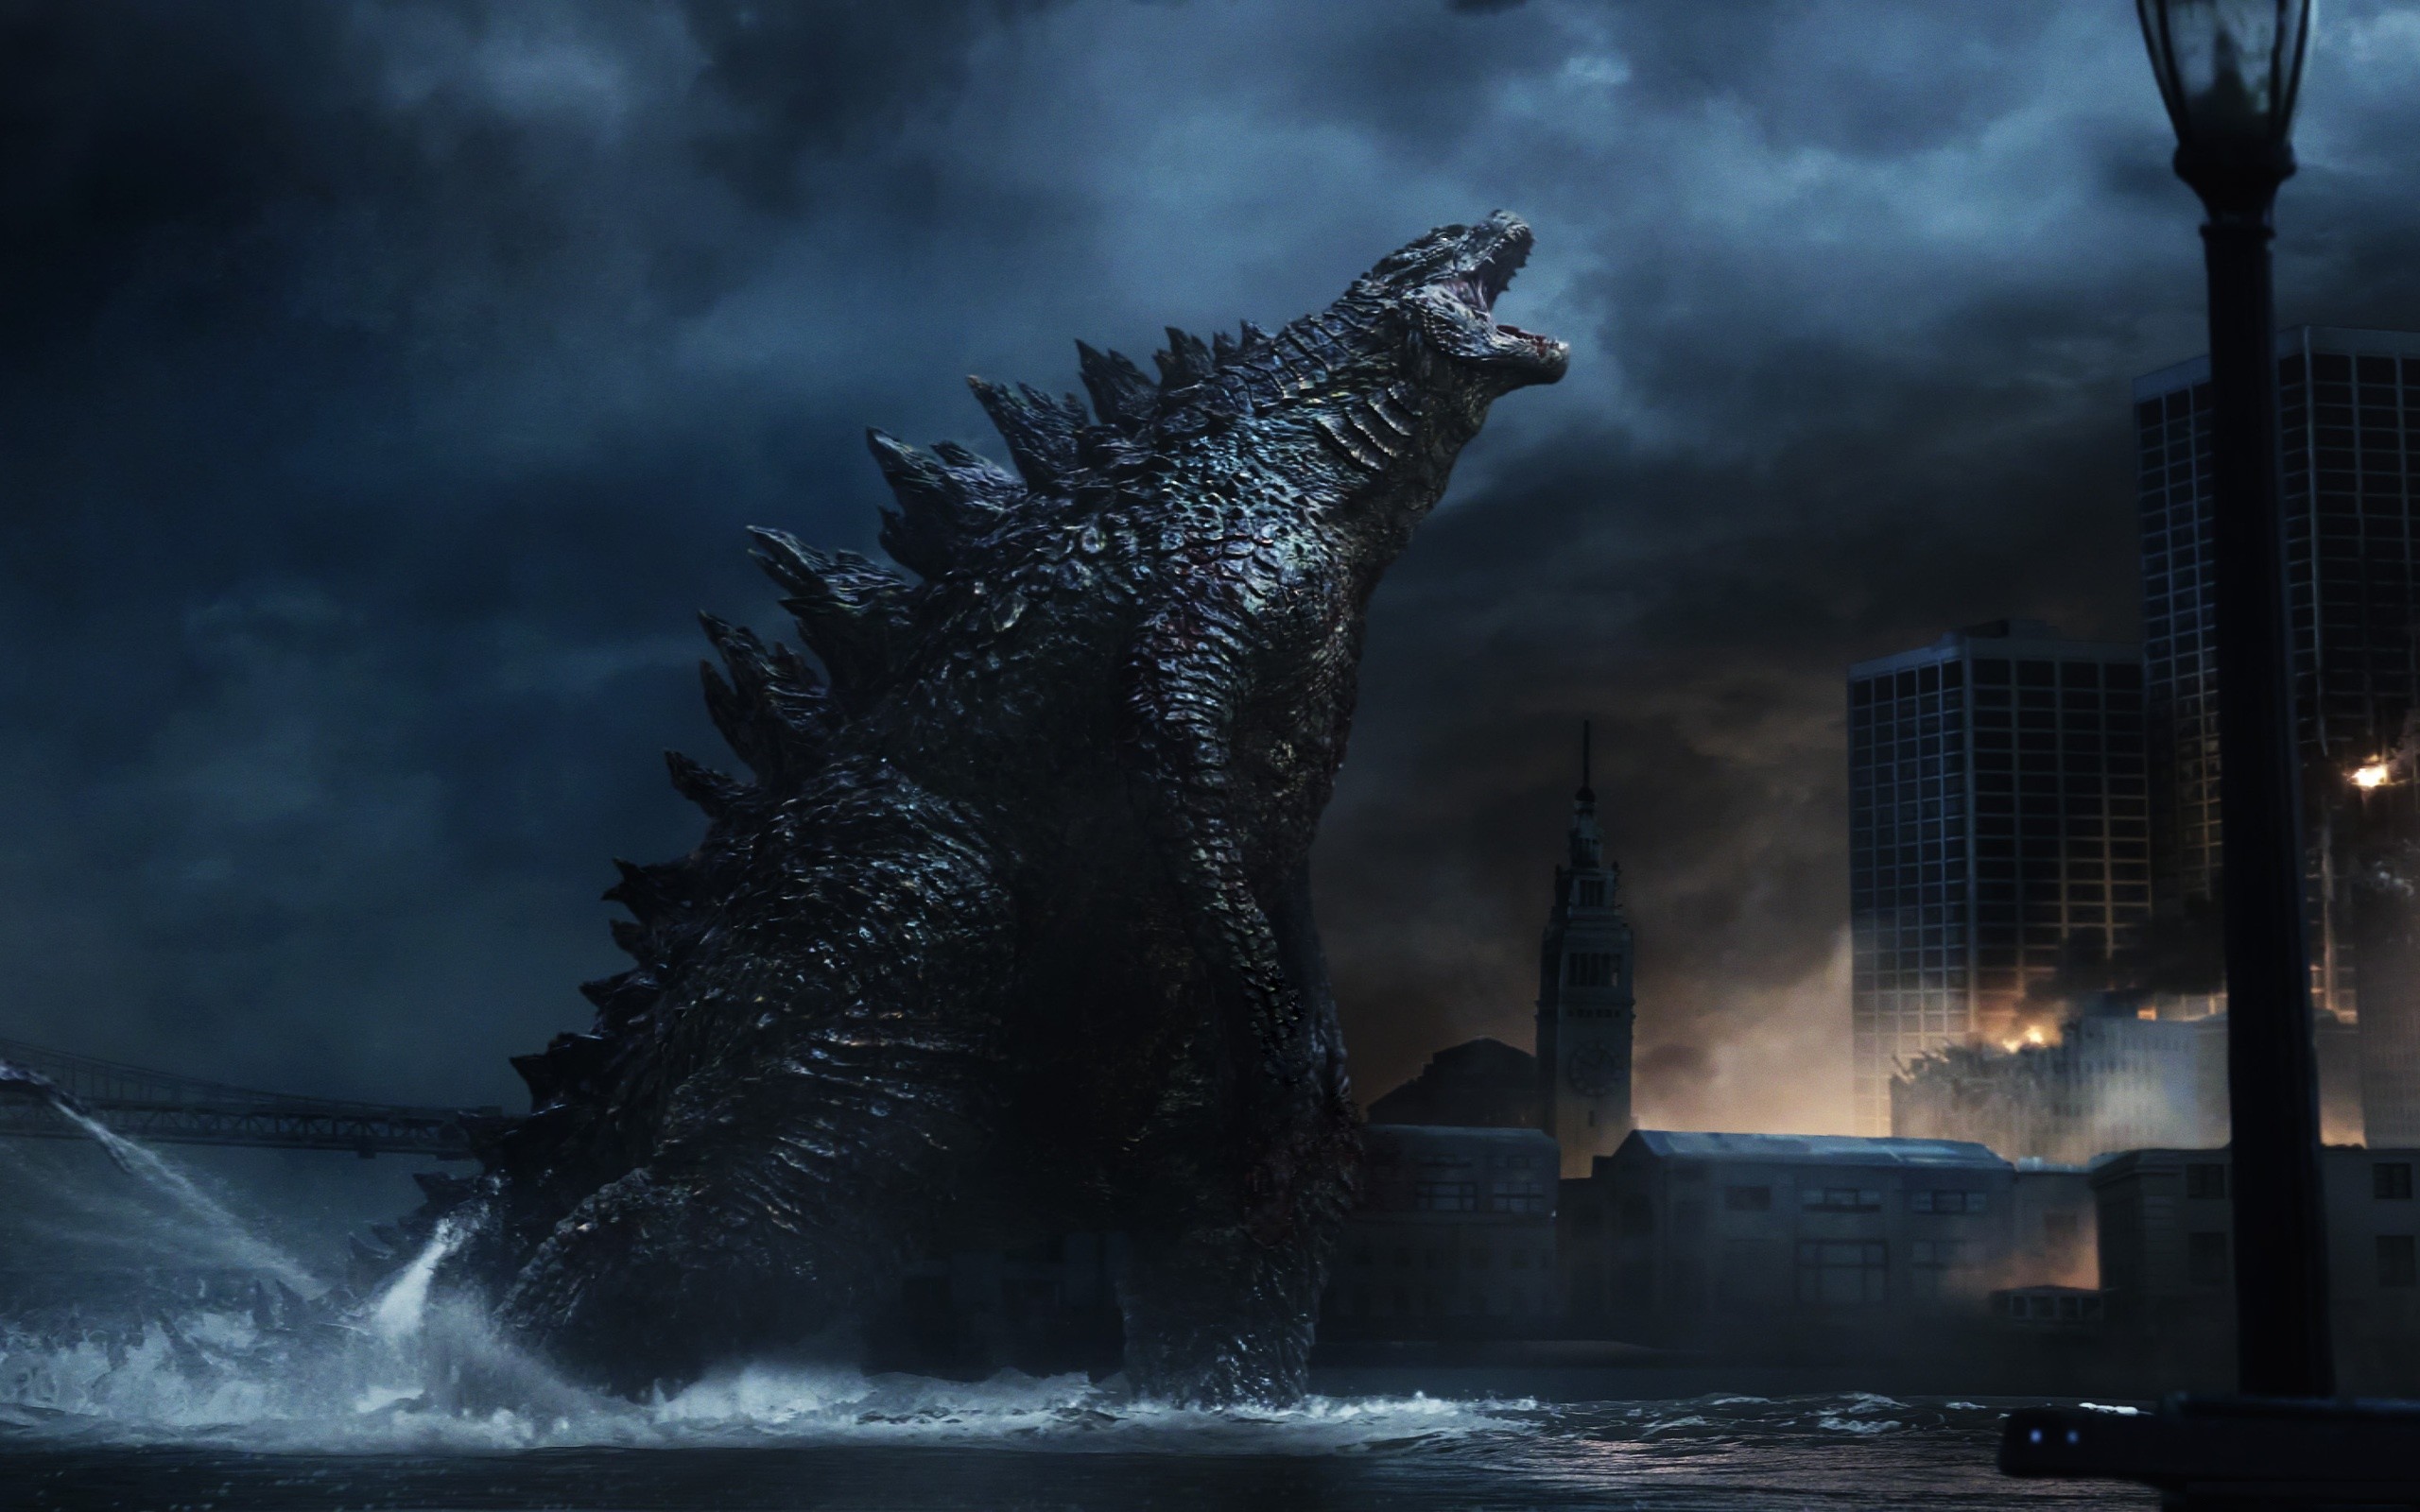 2560x1600 Godzilla images Godzilla 2014 Wallpaper HD wallpaper and background photos